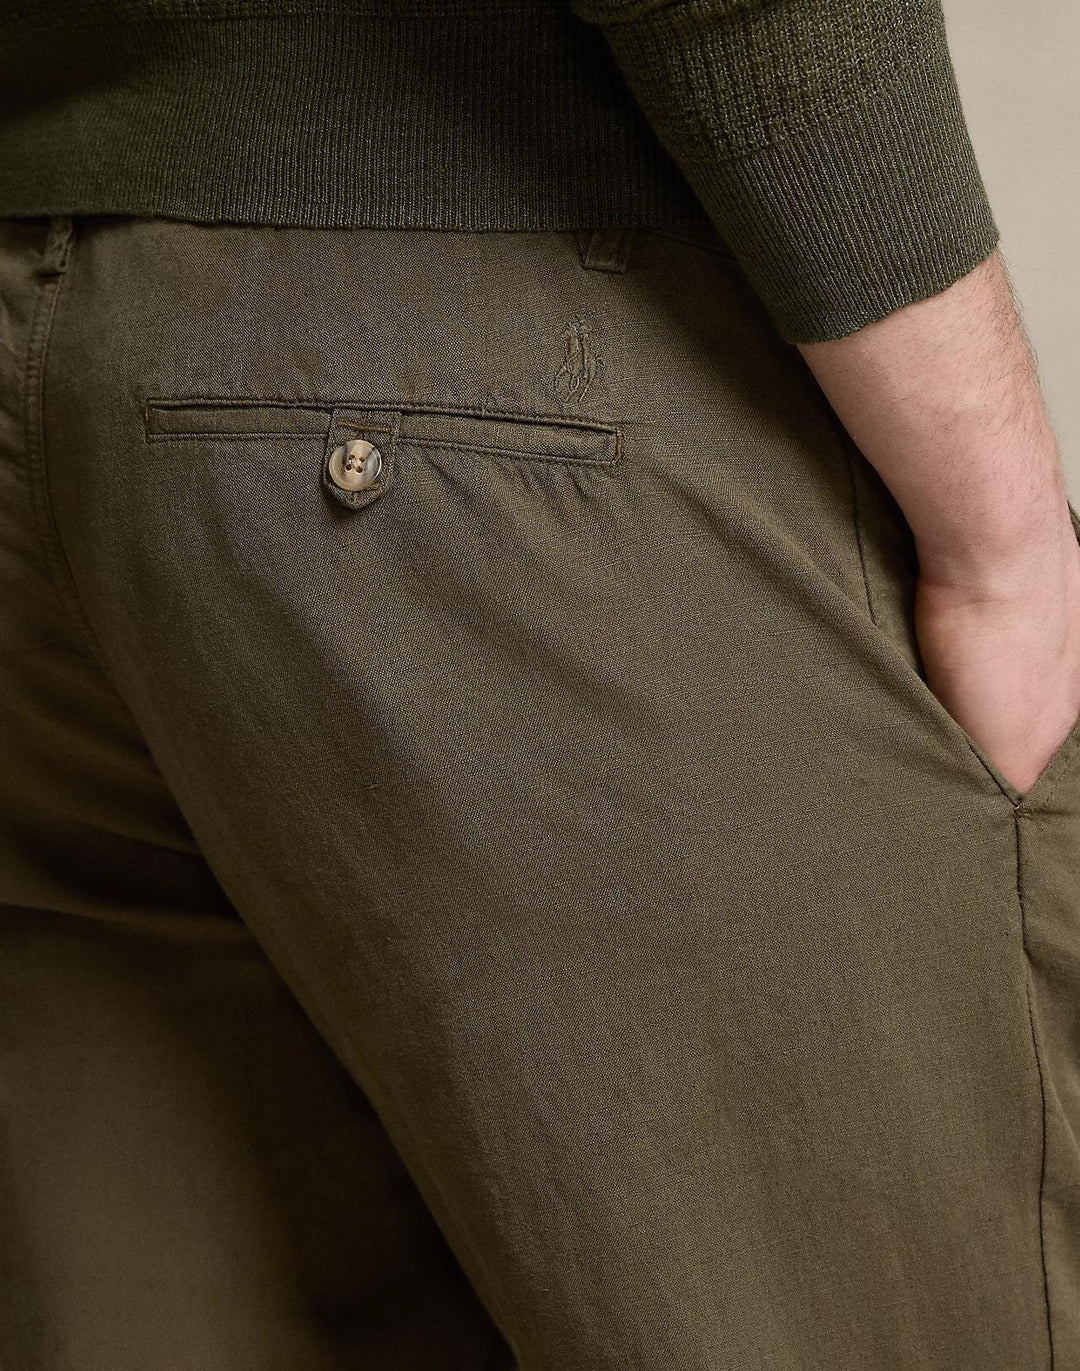 Straight Fit Linen-Cotton Trouser